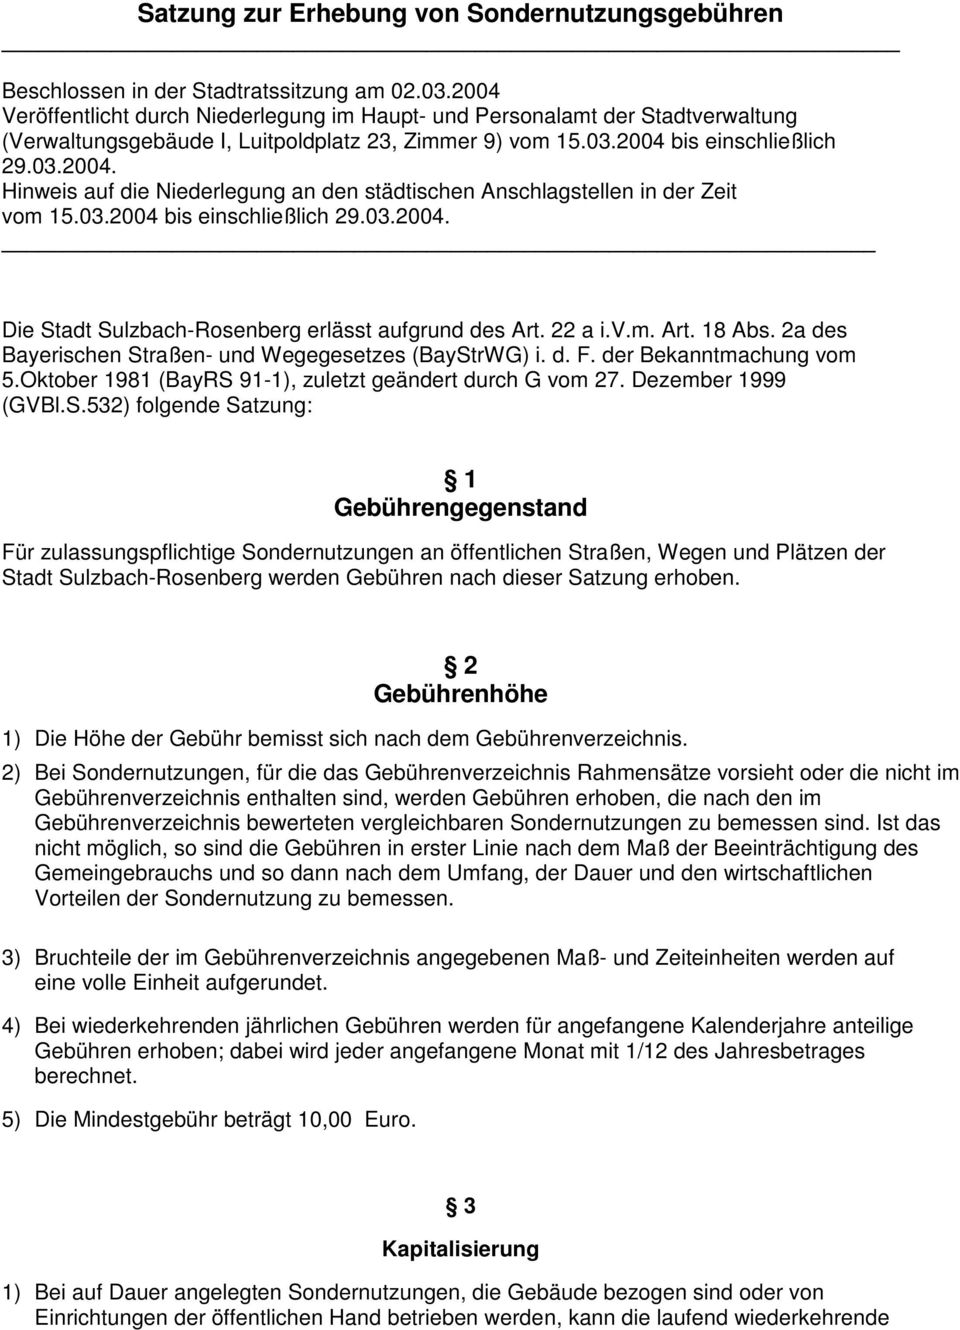 03.2004 bis einschließlich 29.03.2004. Die Stadt Sulzbach-Rosenberg erlässt aufgrund des Art. 22 a i.v.m. Art. 18 Abs. 2a des Bayerischen Straßen- und Wegegesetzes (BayStrWG) i. d. F.